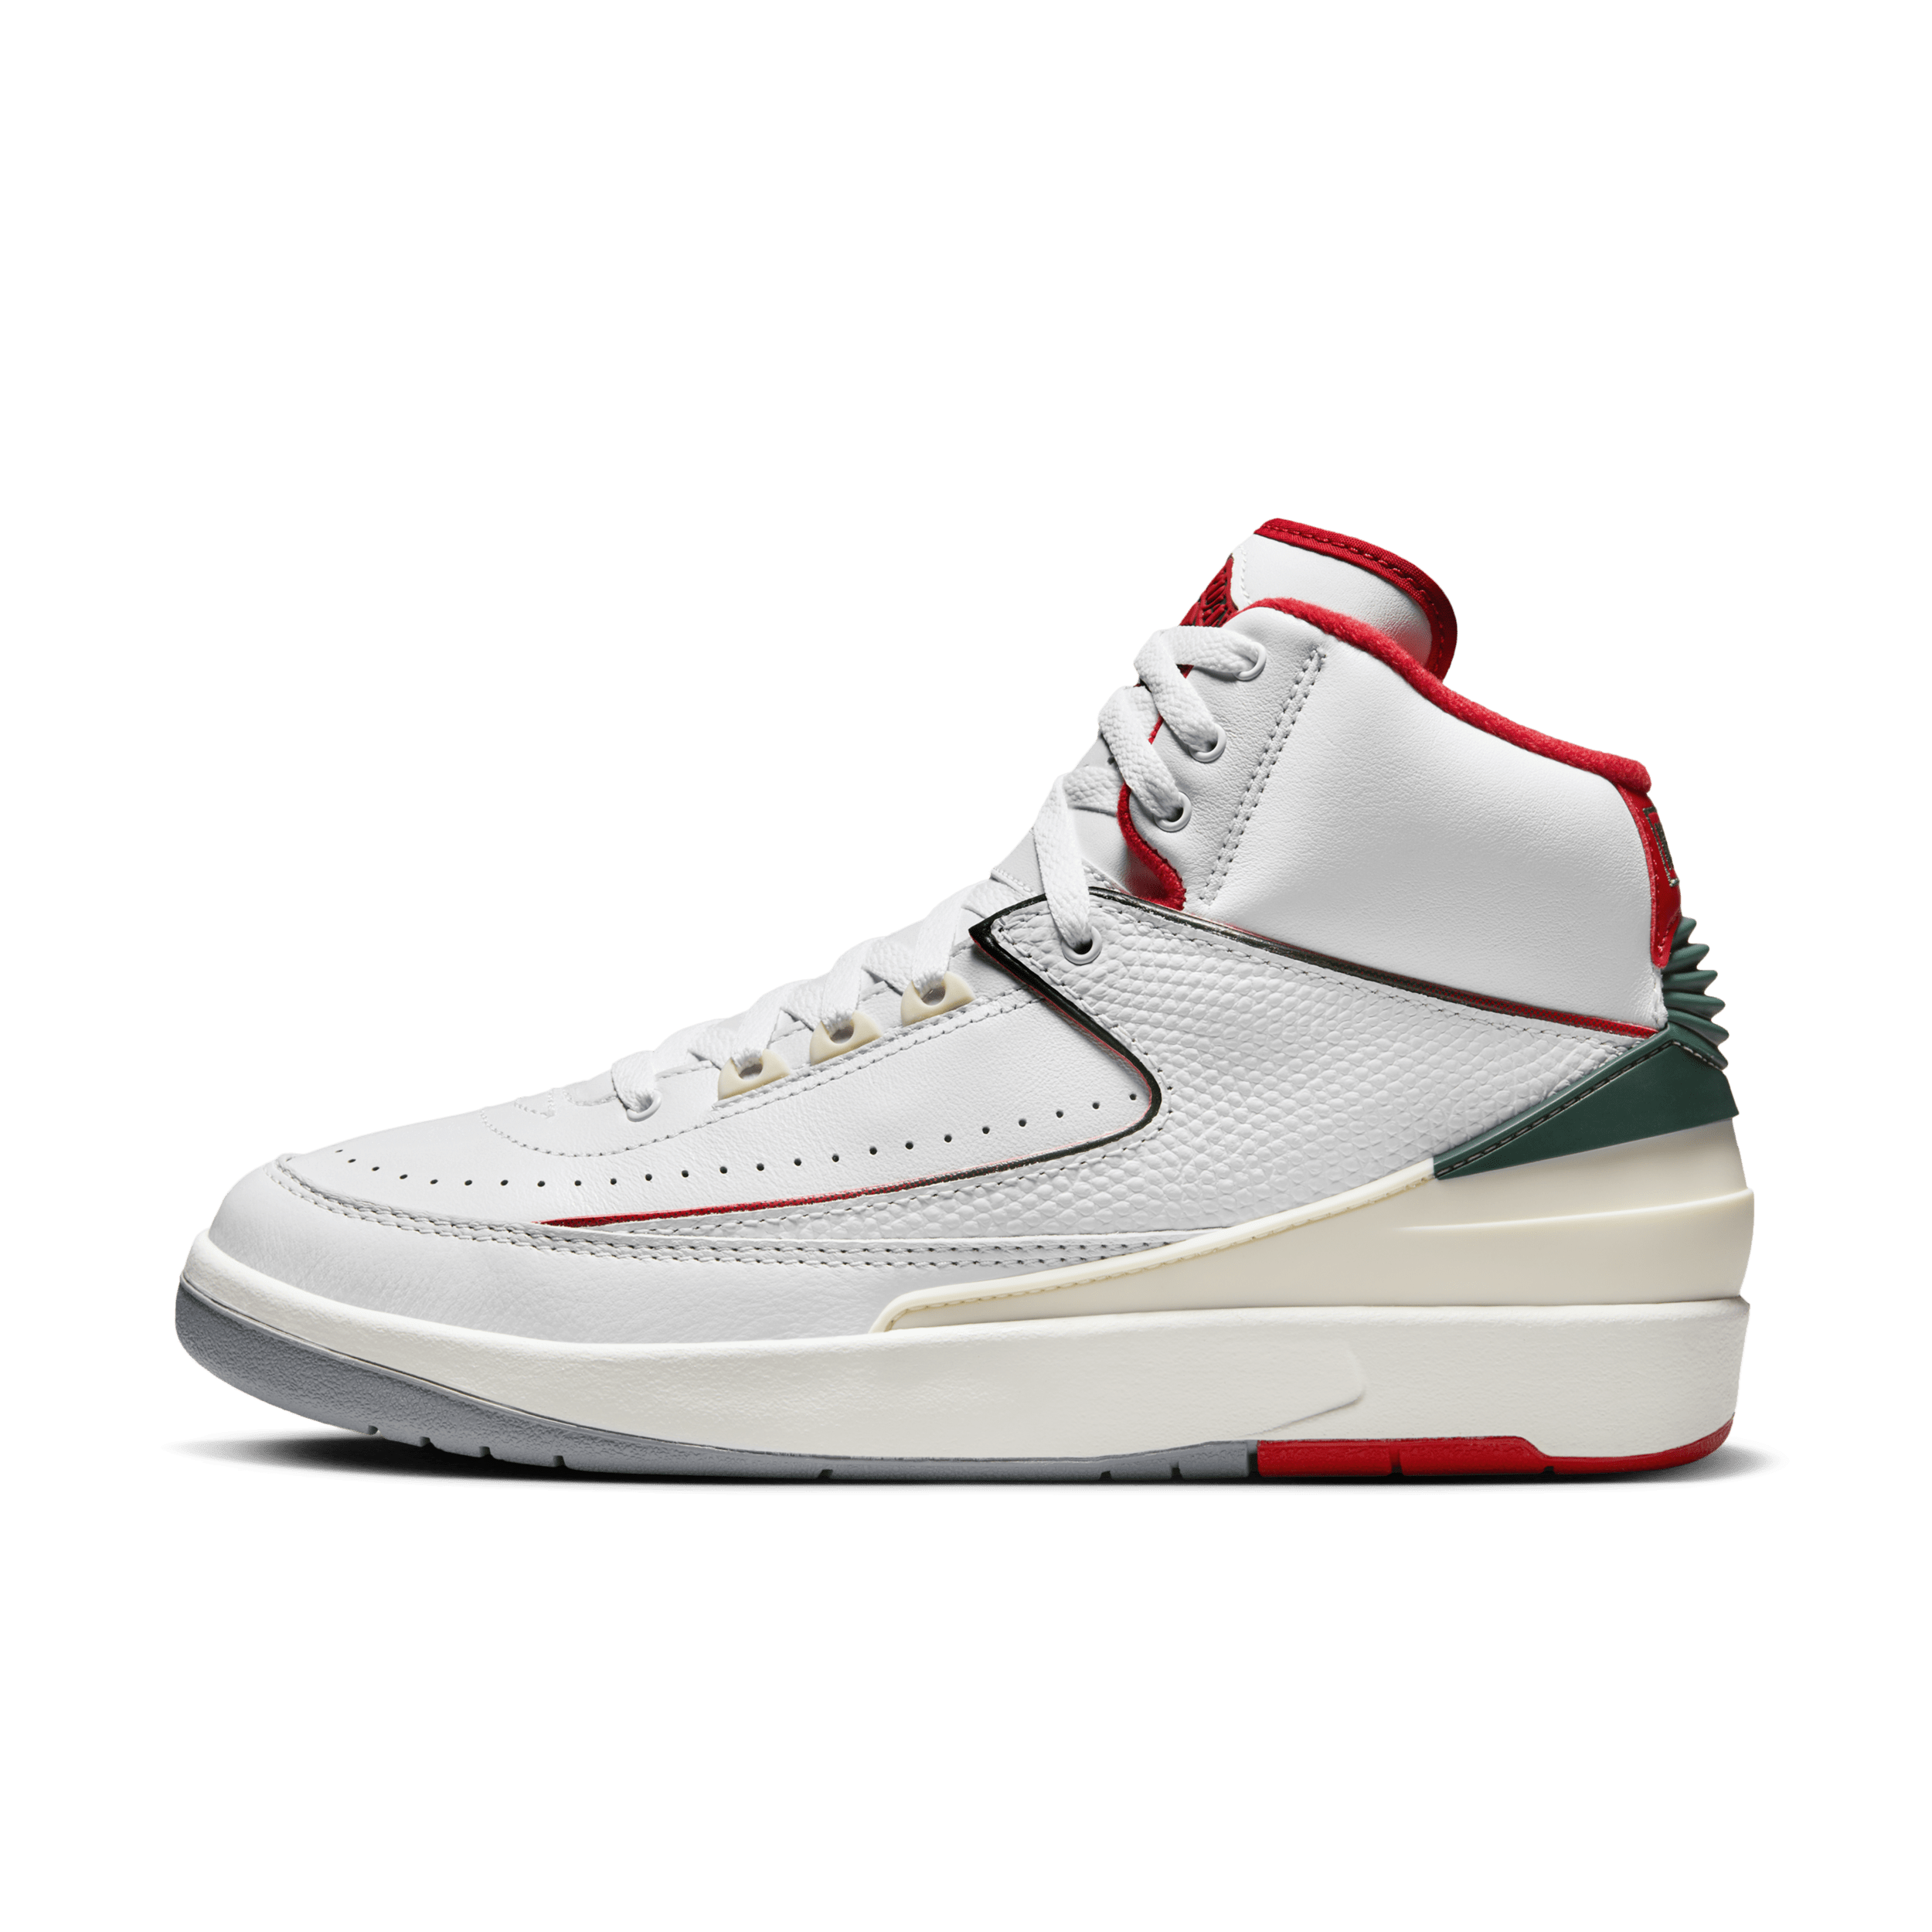 Air Jordan 2 'Origins' herenschoenen - Wit